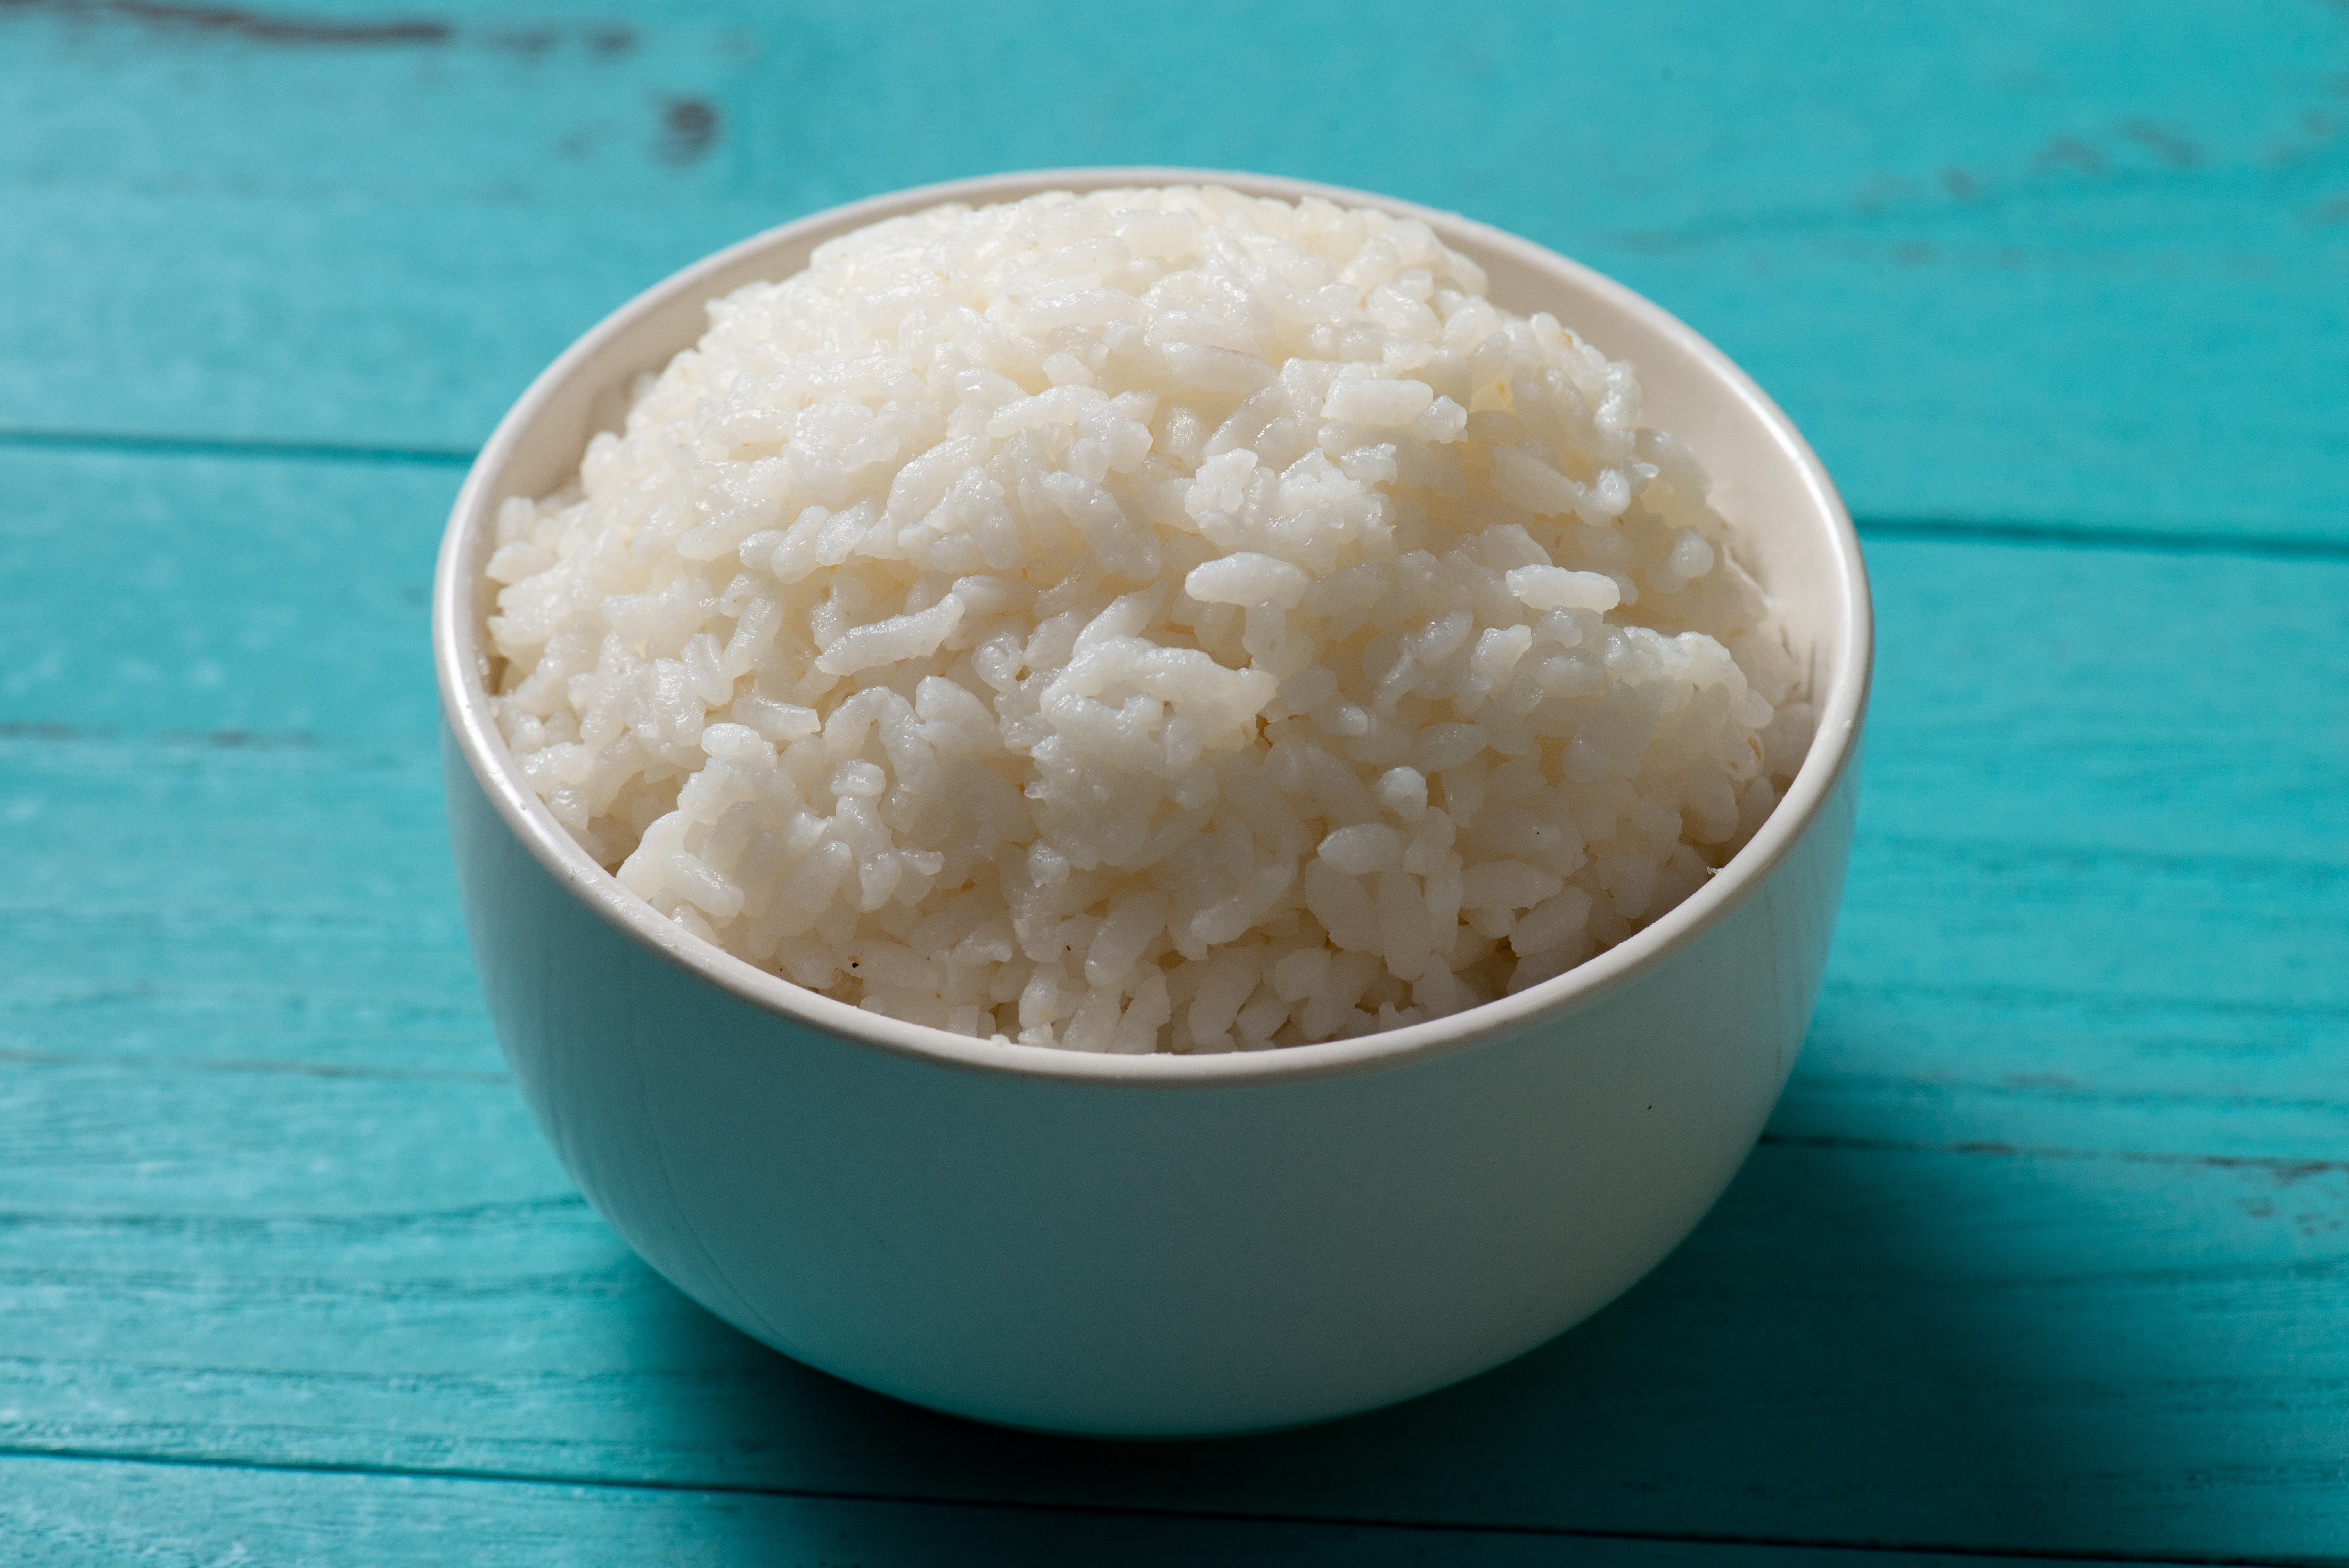 水稻 脱壳 蒸 米食 主食 中国食物 熟的 传统食品 饮食文化 一碗饭